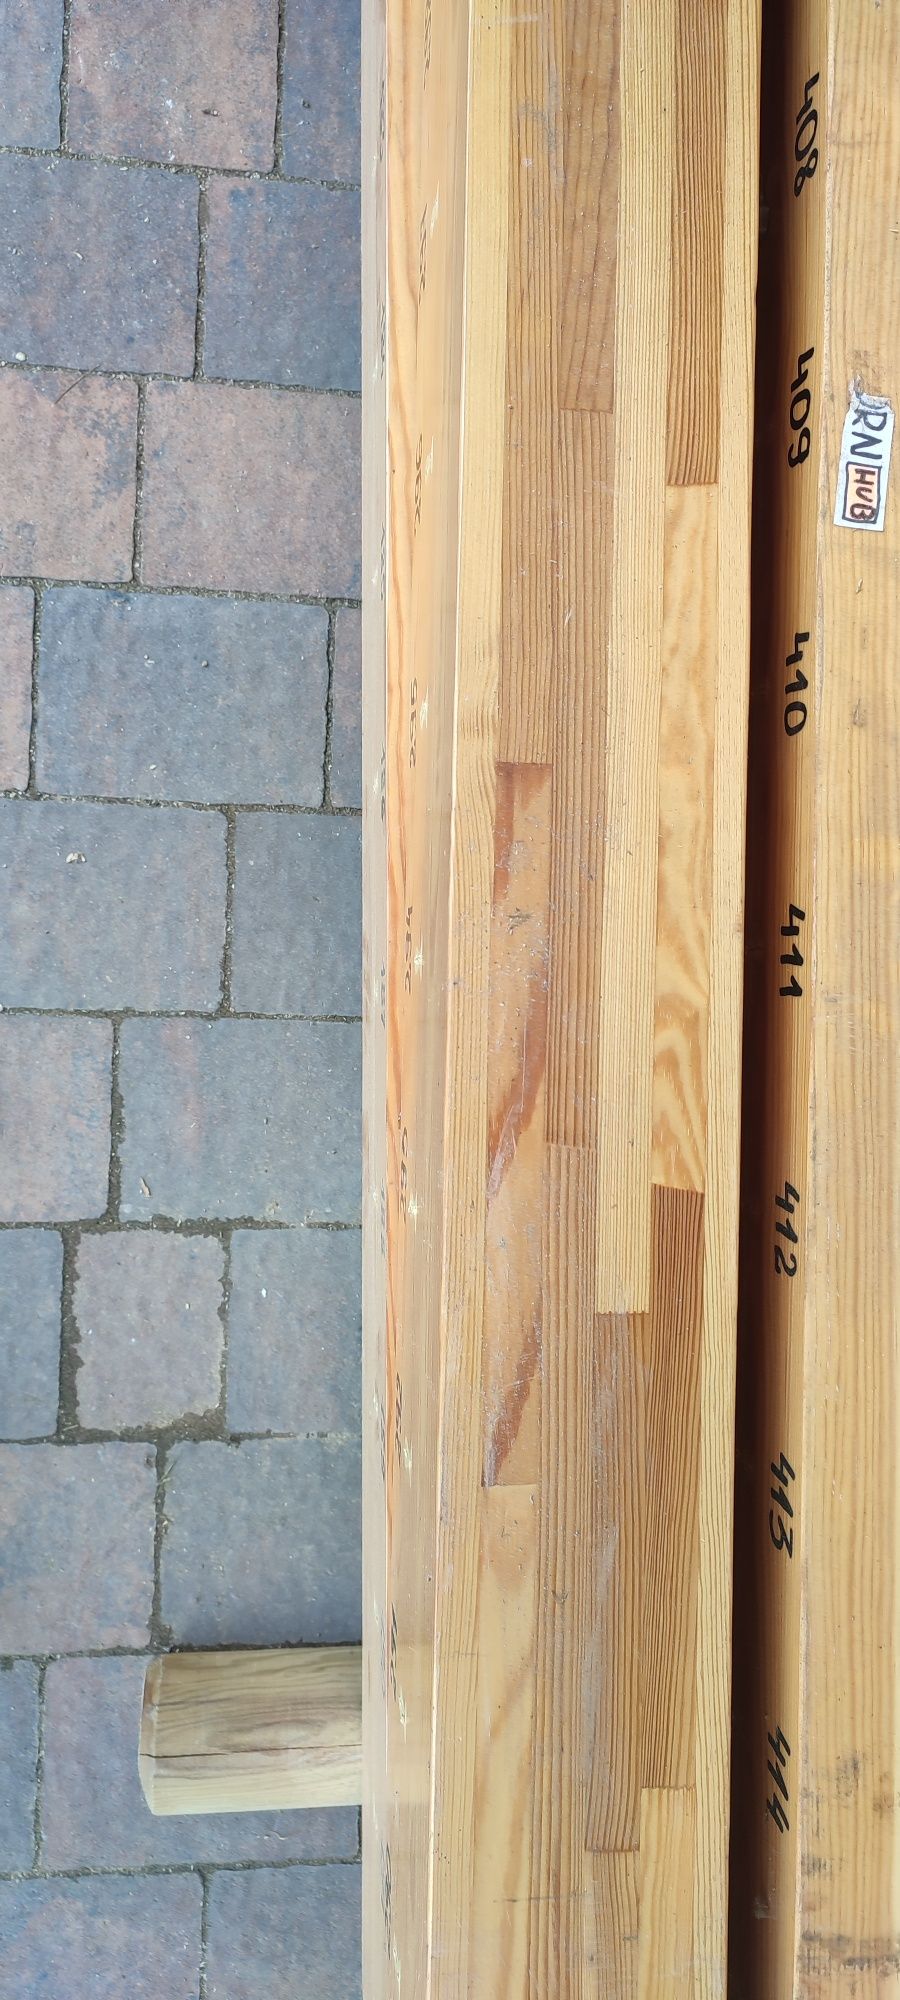 Drewno,słup,kantówka z klejonych elementów 183x18x12